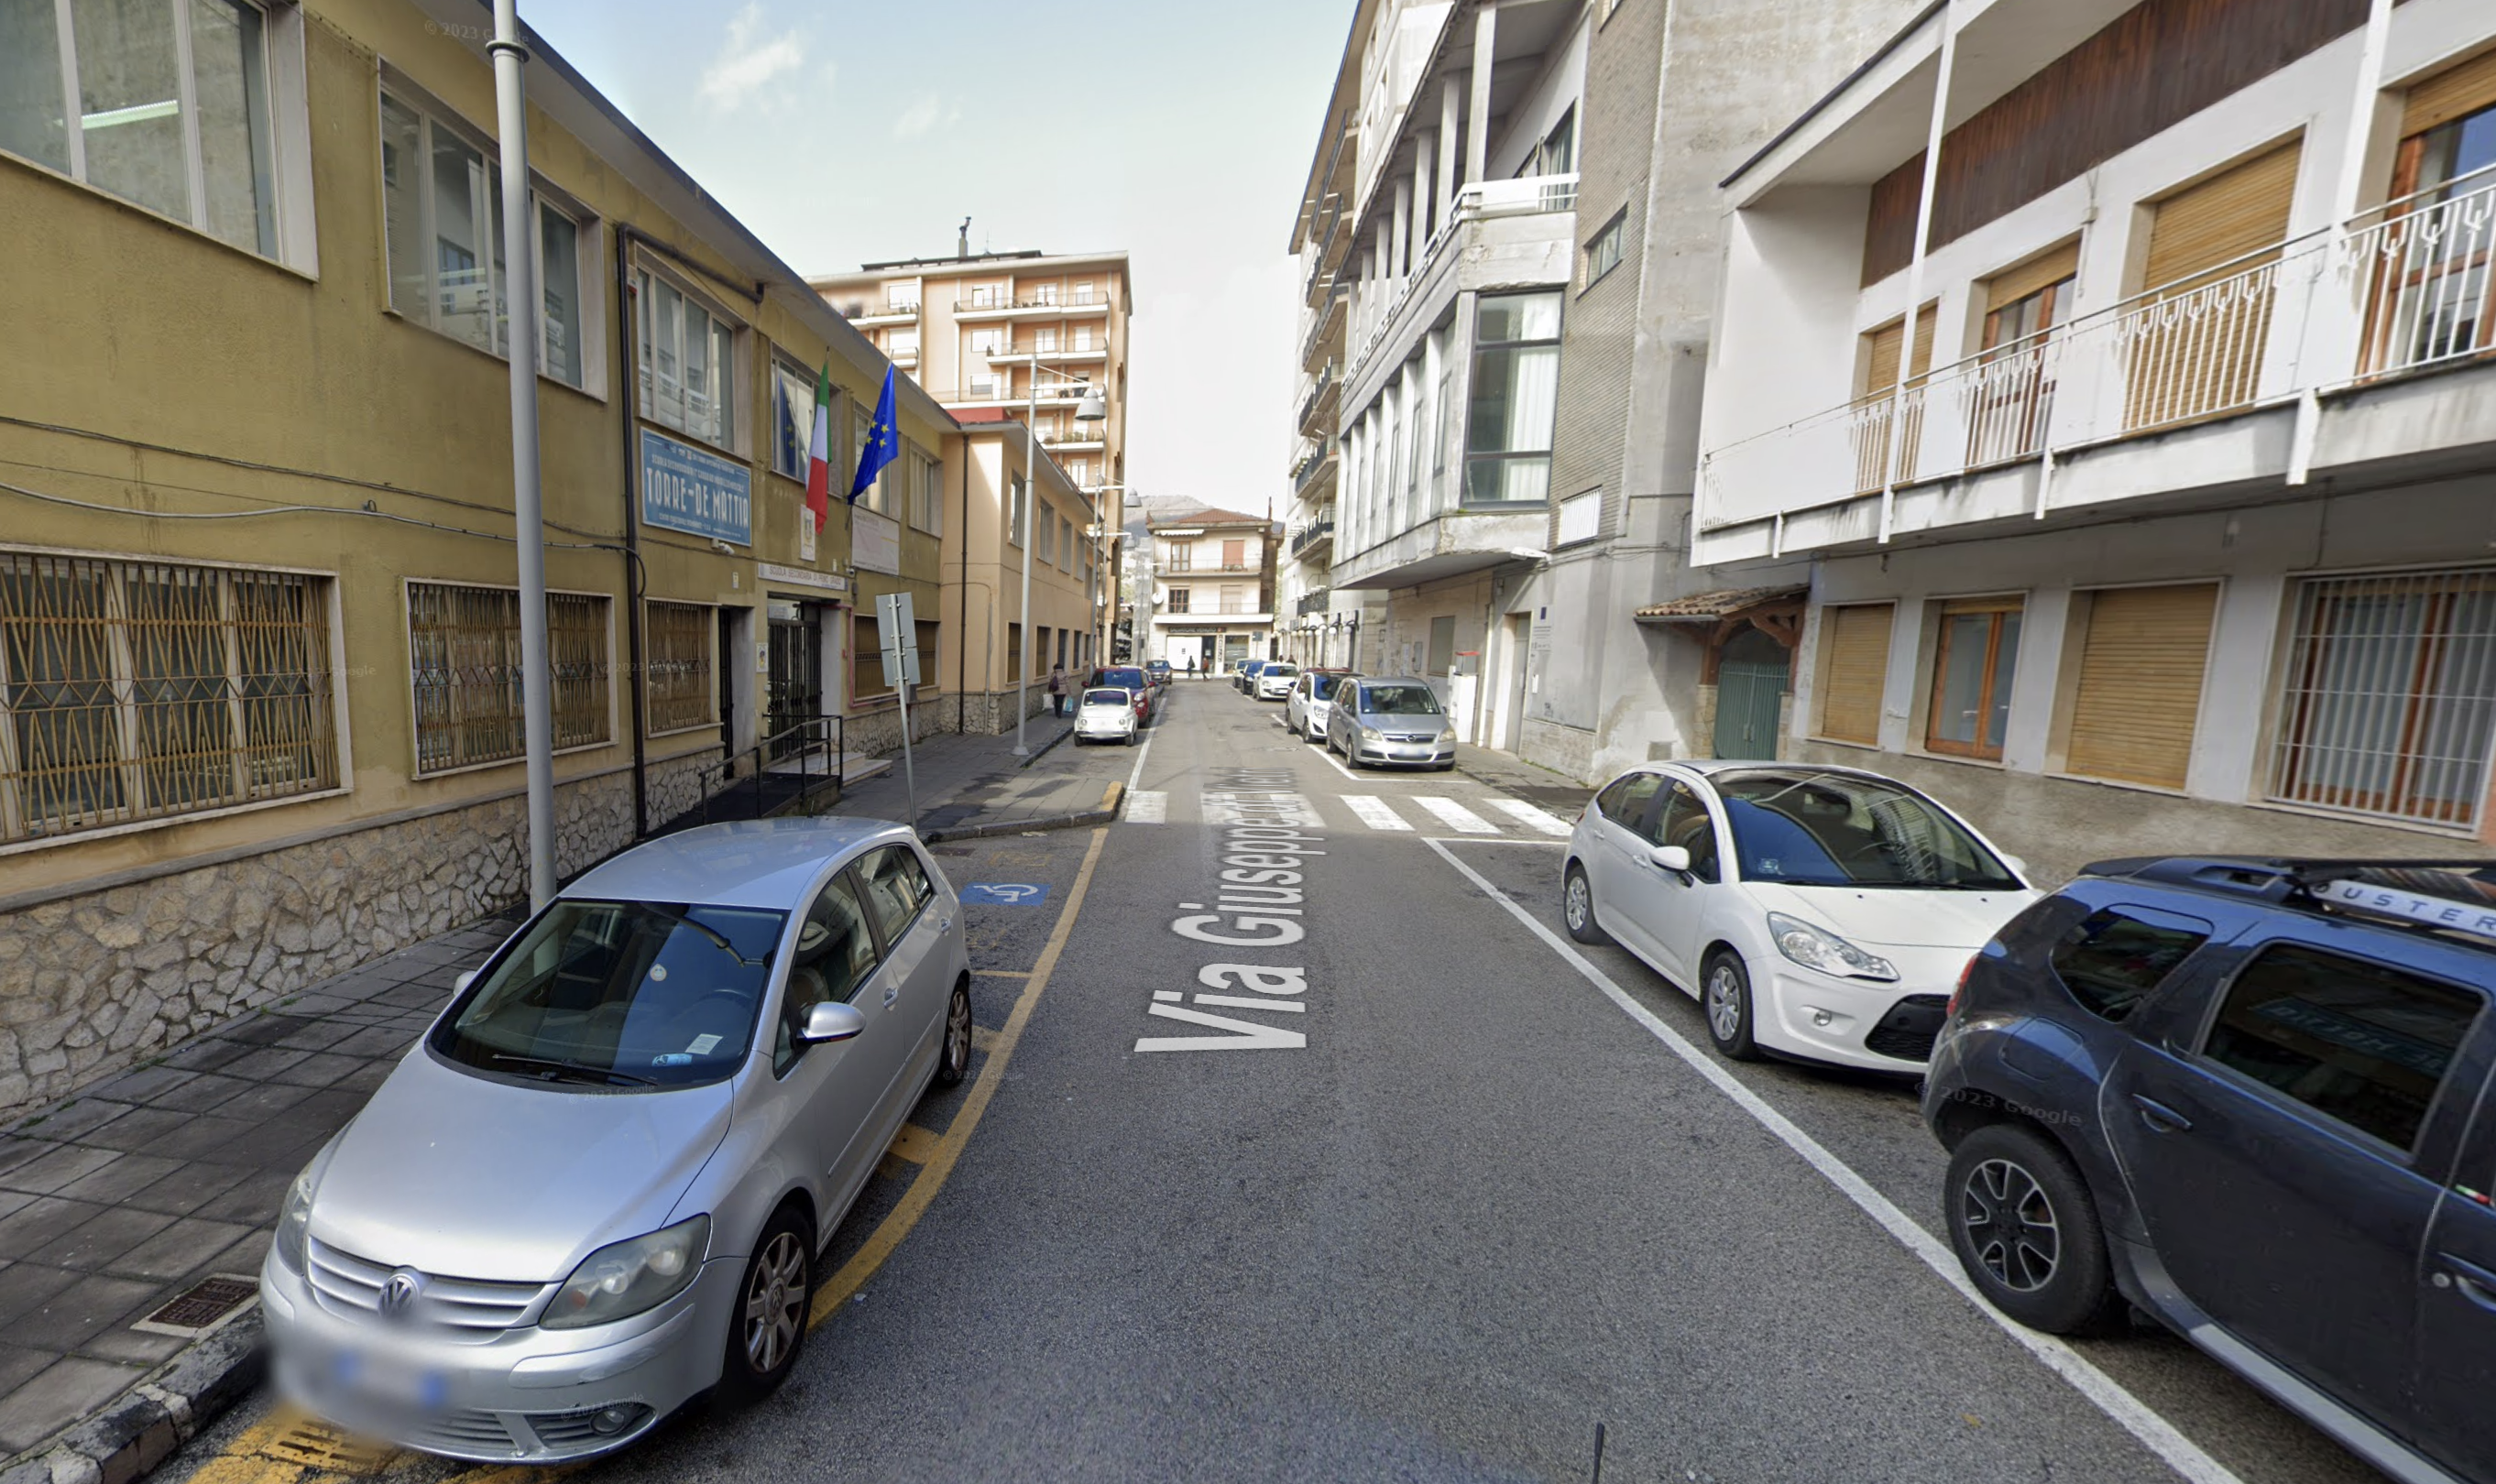 Addio alla scuola Andrea Torre di Vallo della Lucania: sarà demolita e ricostruita